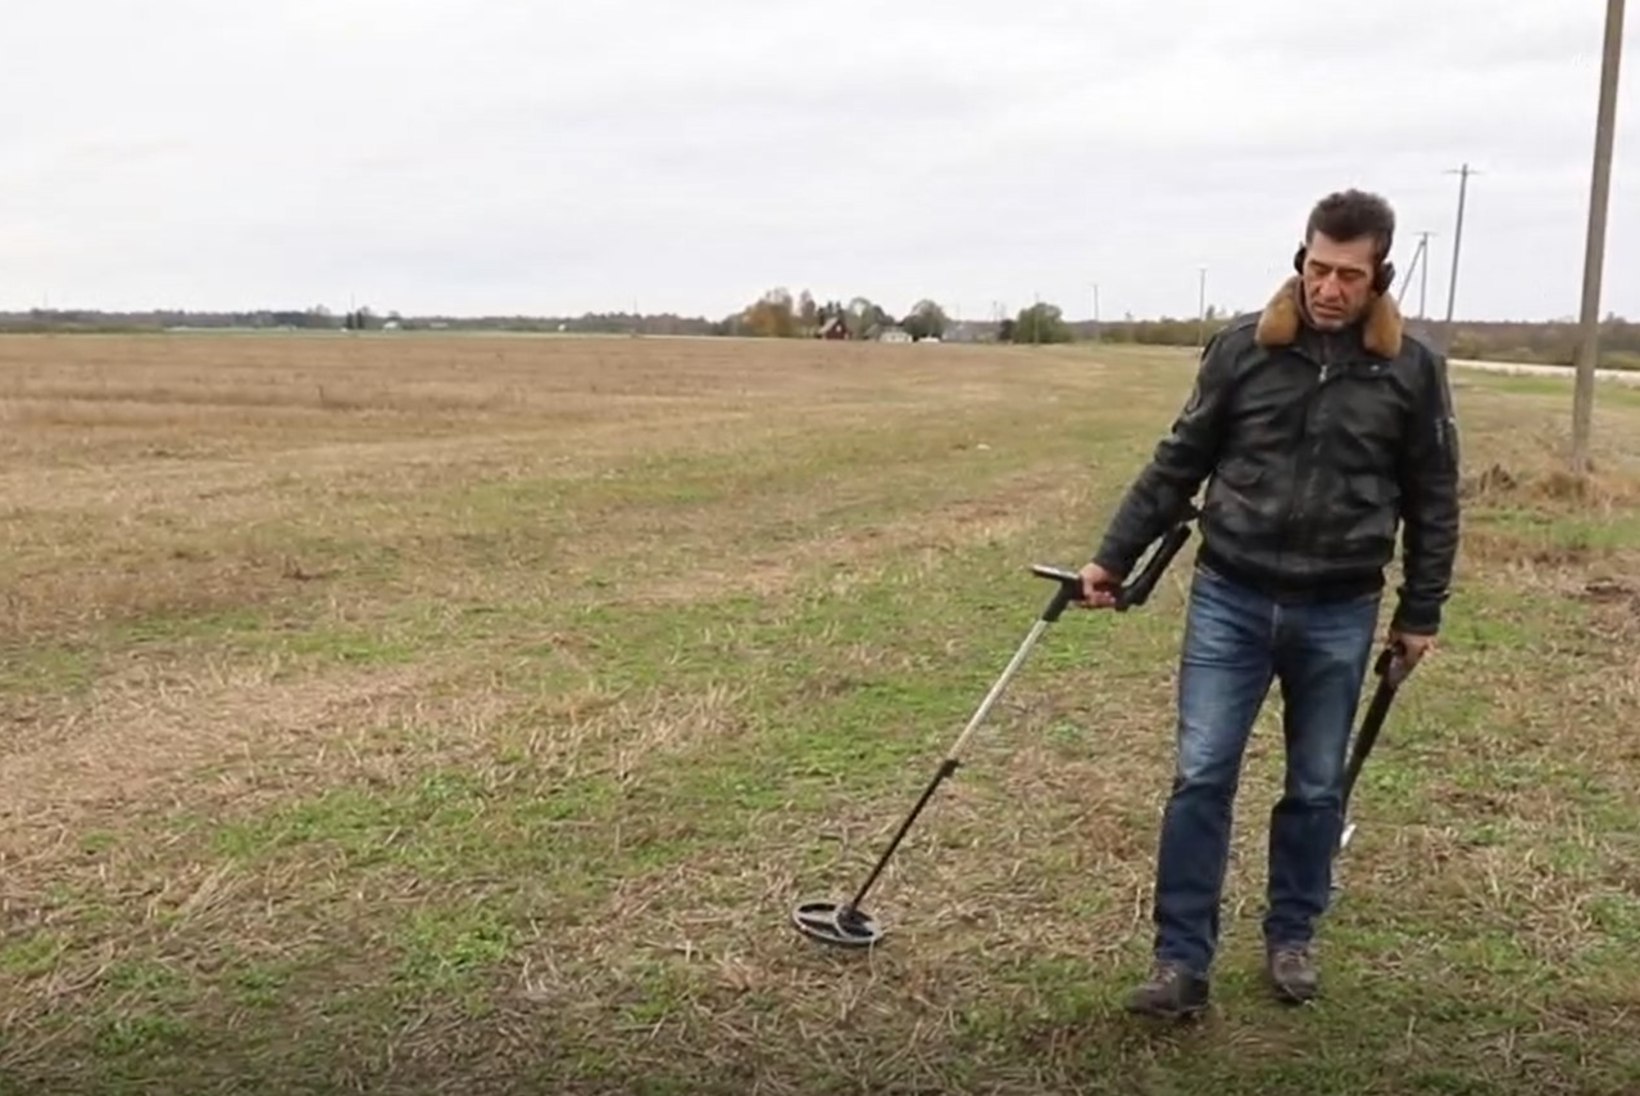 ÕHTULEHE VIDEO | Detektoristi viib põllule piiksutama ajaloohuvi